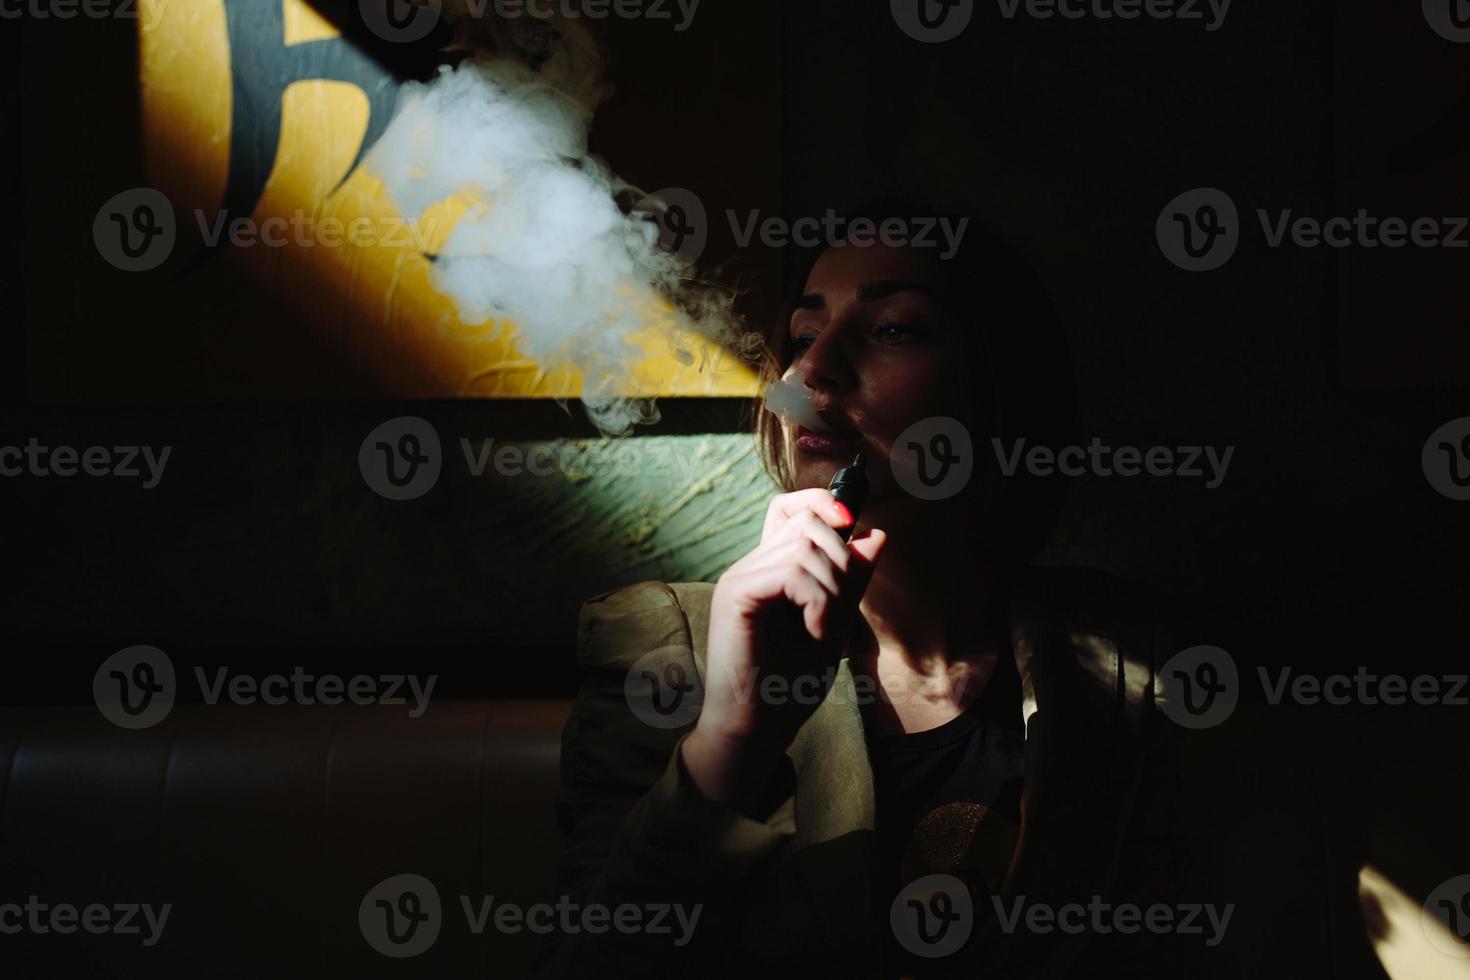 chica se sienta y fuma cigarrillo electrónico foto